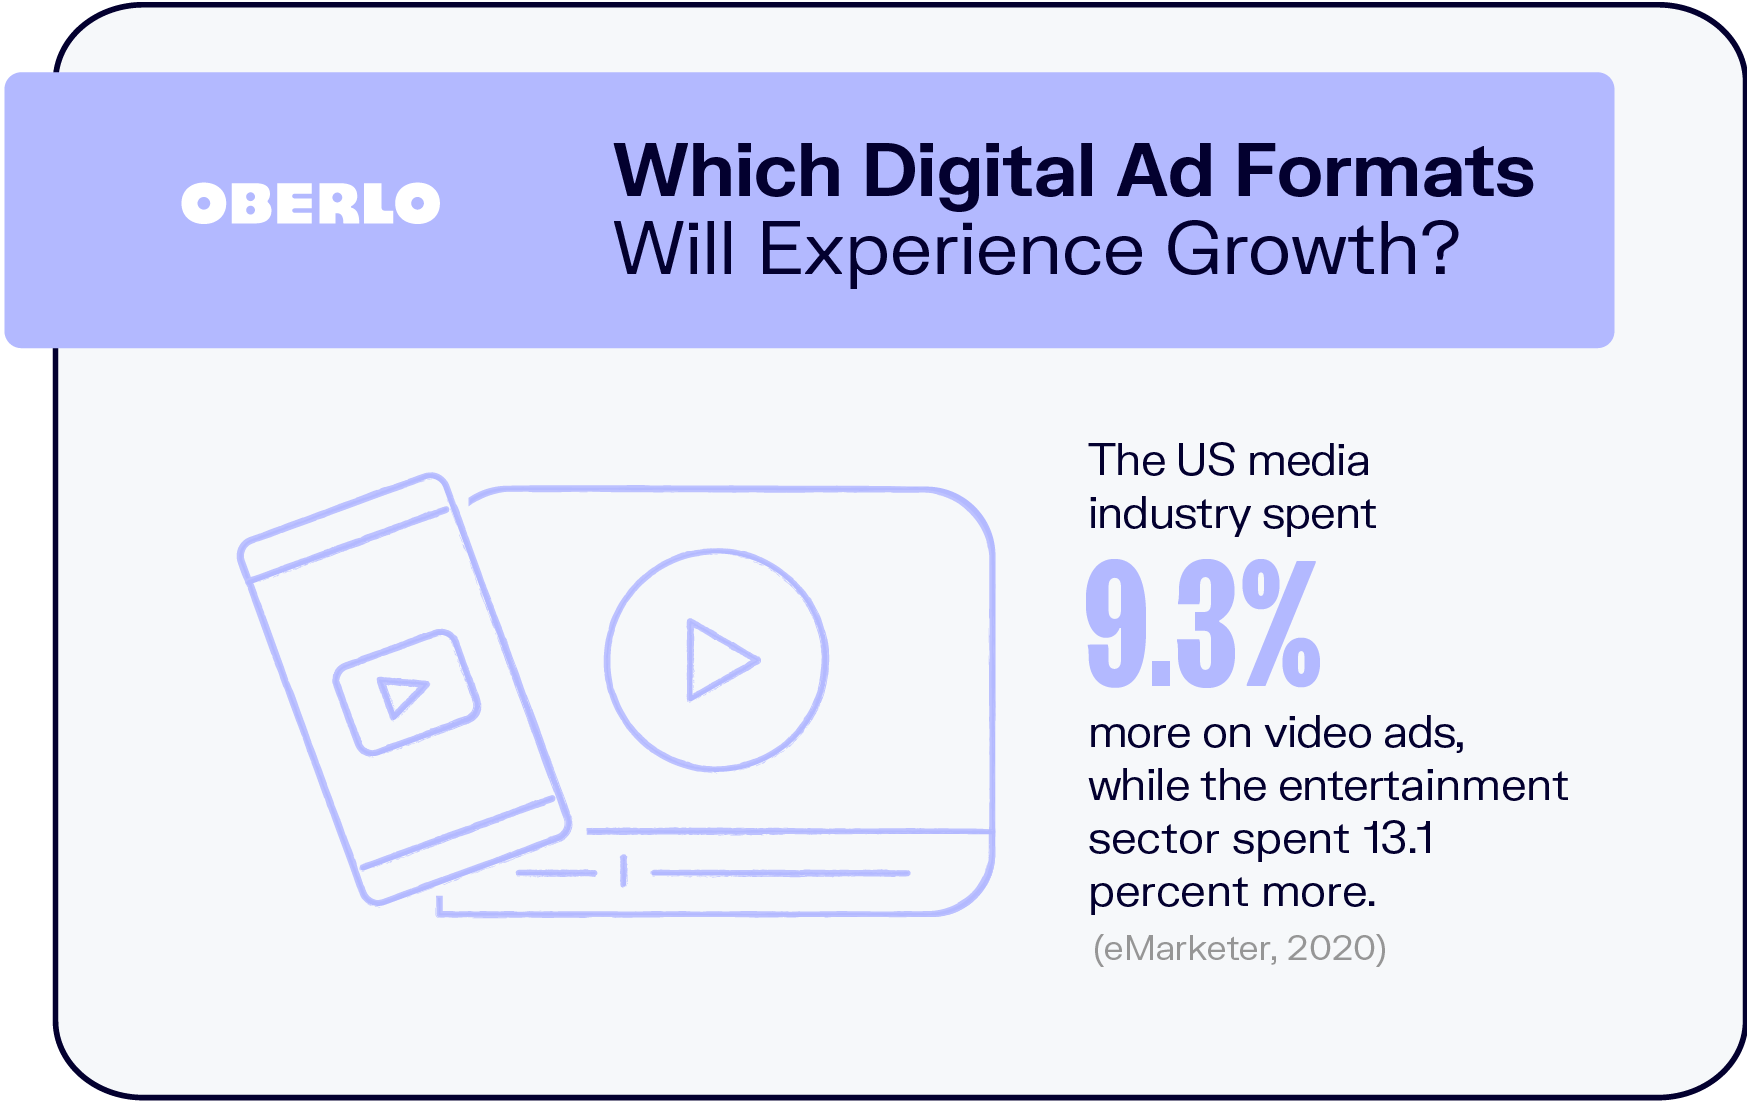 哪些数字广告形式将获得增长?